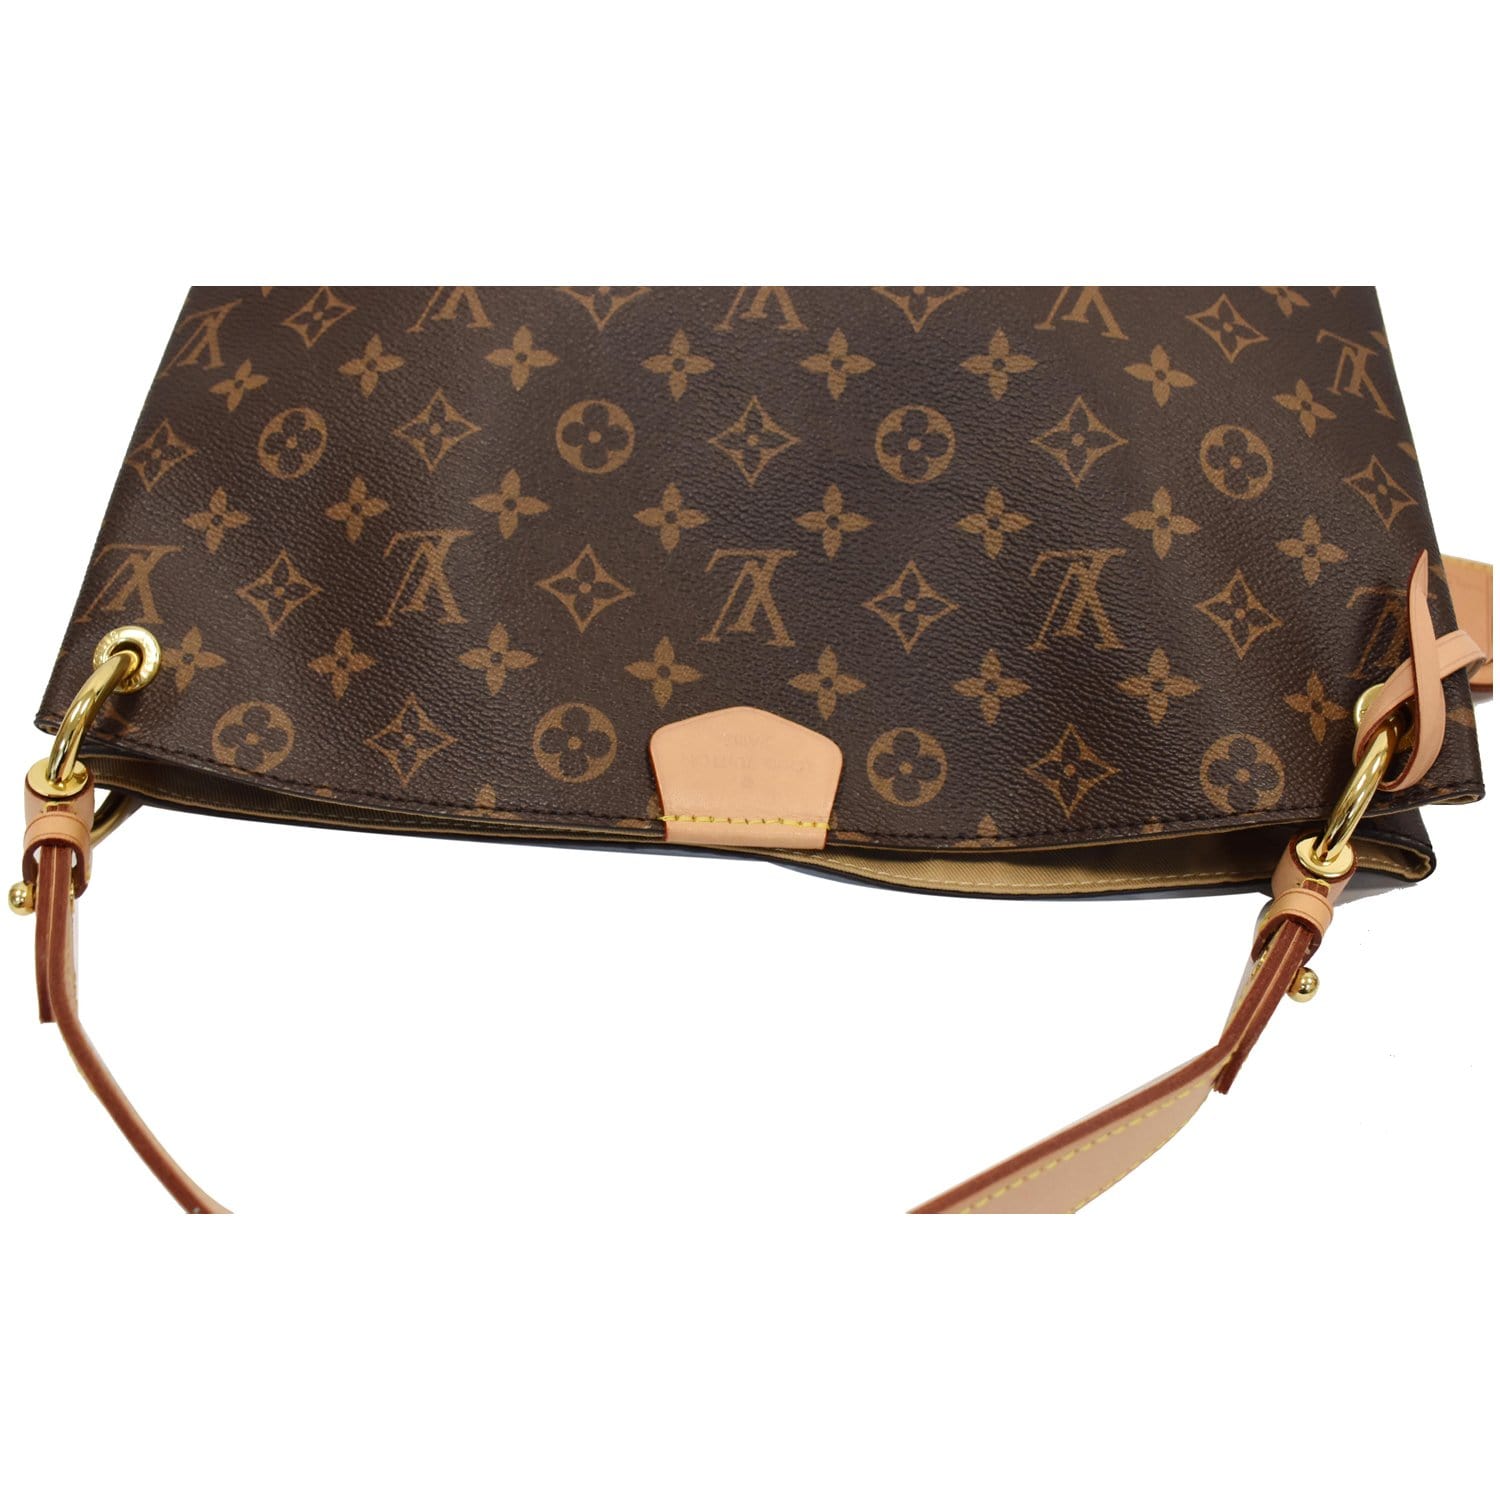 Louis Vuitton Graceful PM Handbag Monogram Canvas. Beige .